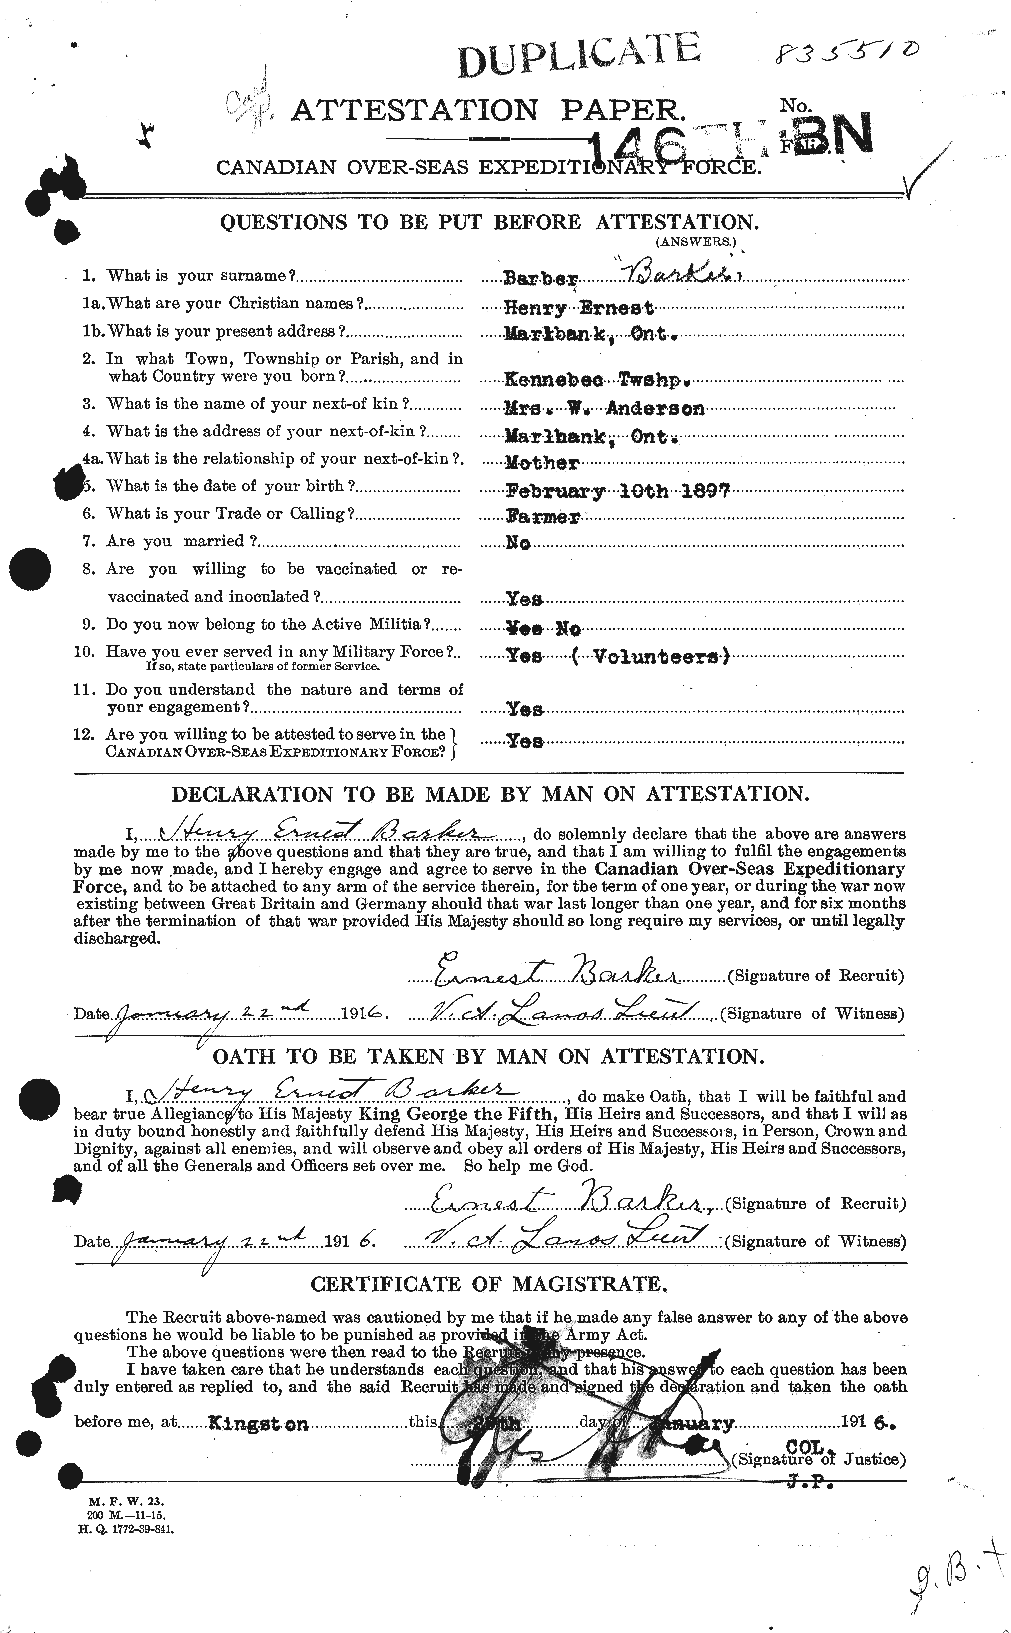 Dossiers du Personnel de la Première Guerre mondiale - CEC 227504a